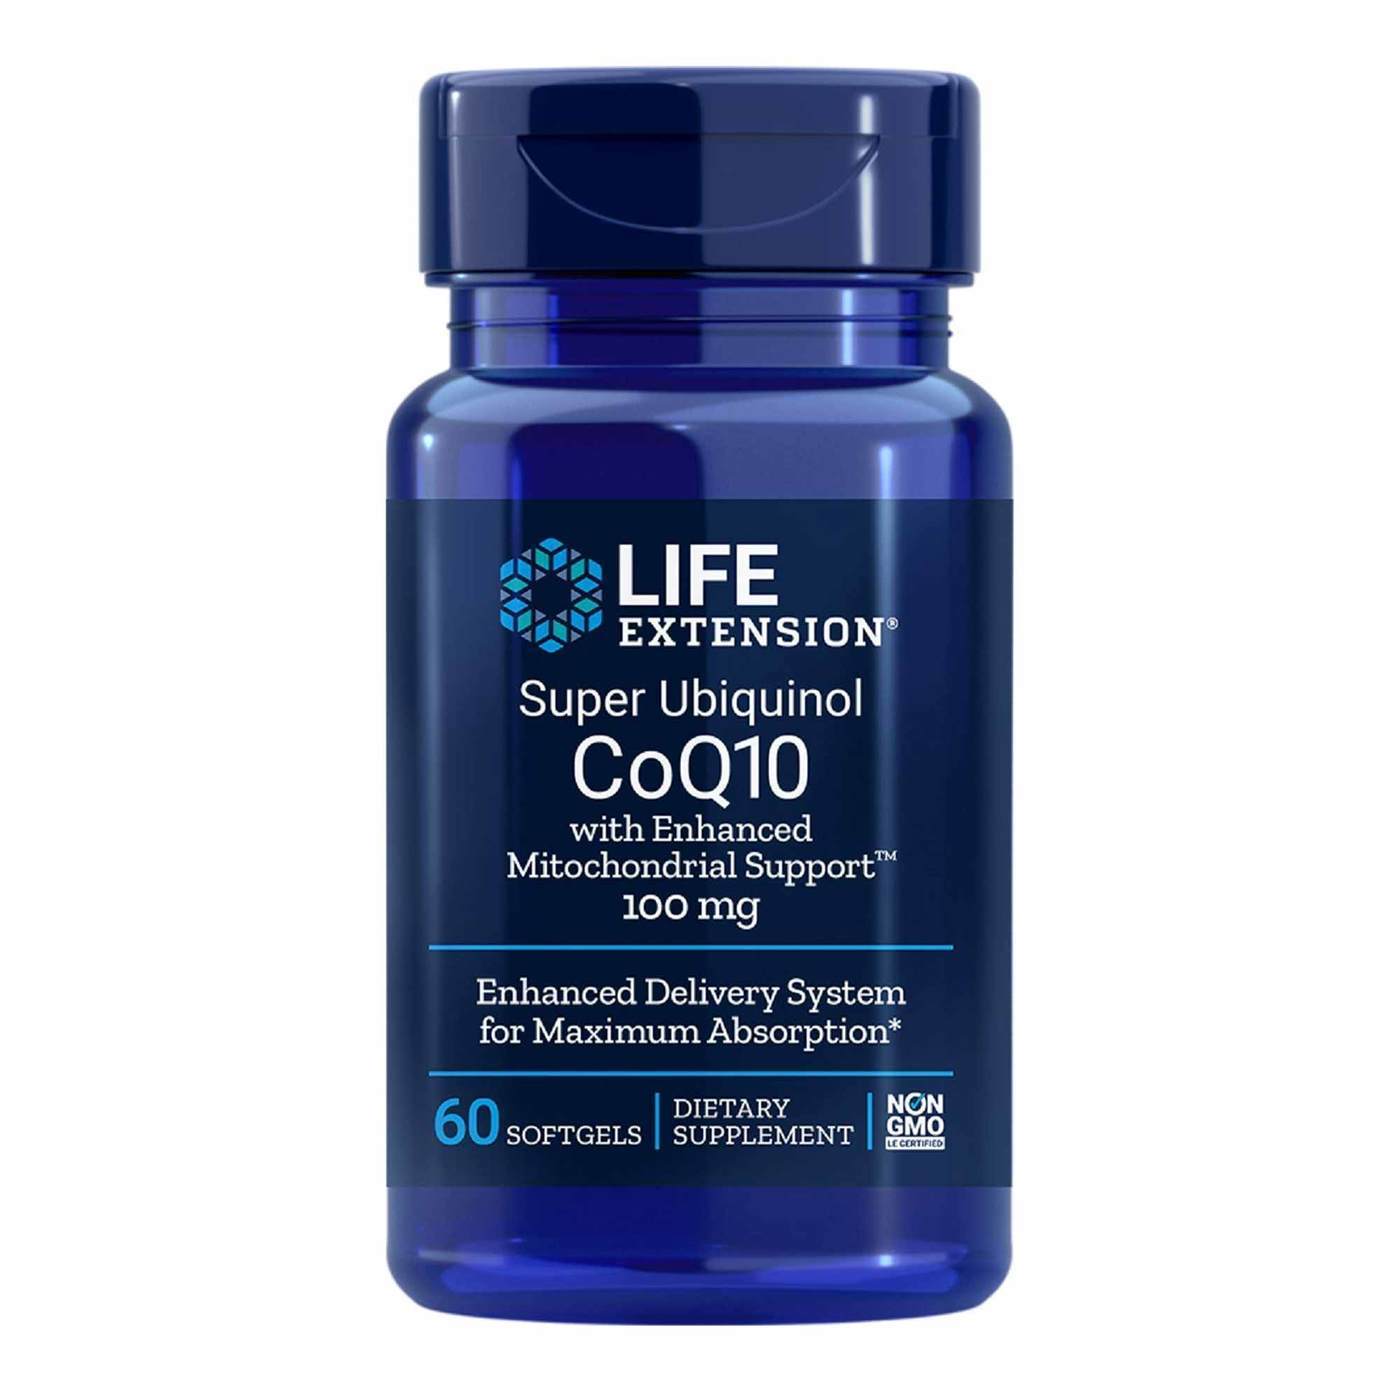 Life Extension Super Ubiquinol CoQ10 with Enhanced Mitochondrial Support  100 mg - 60 Softgels - eVitamins.com